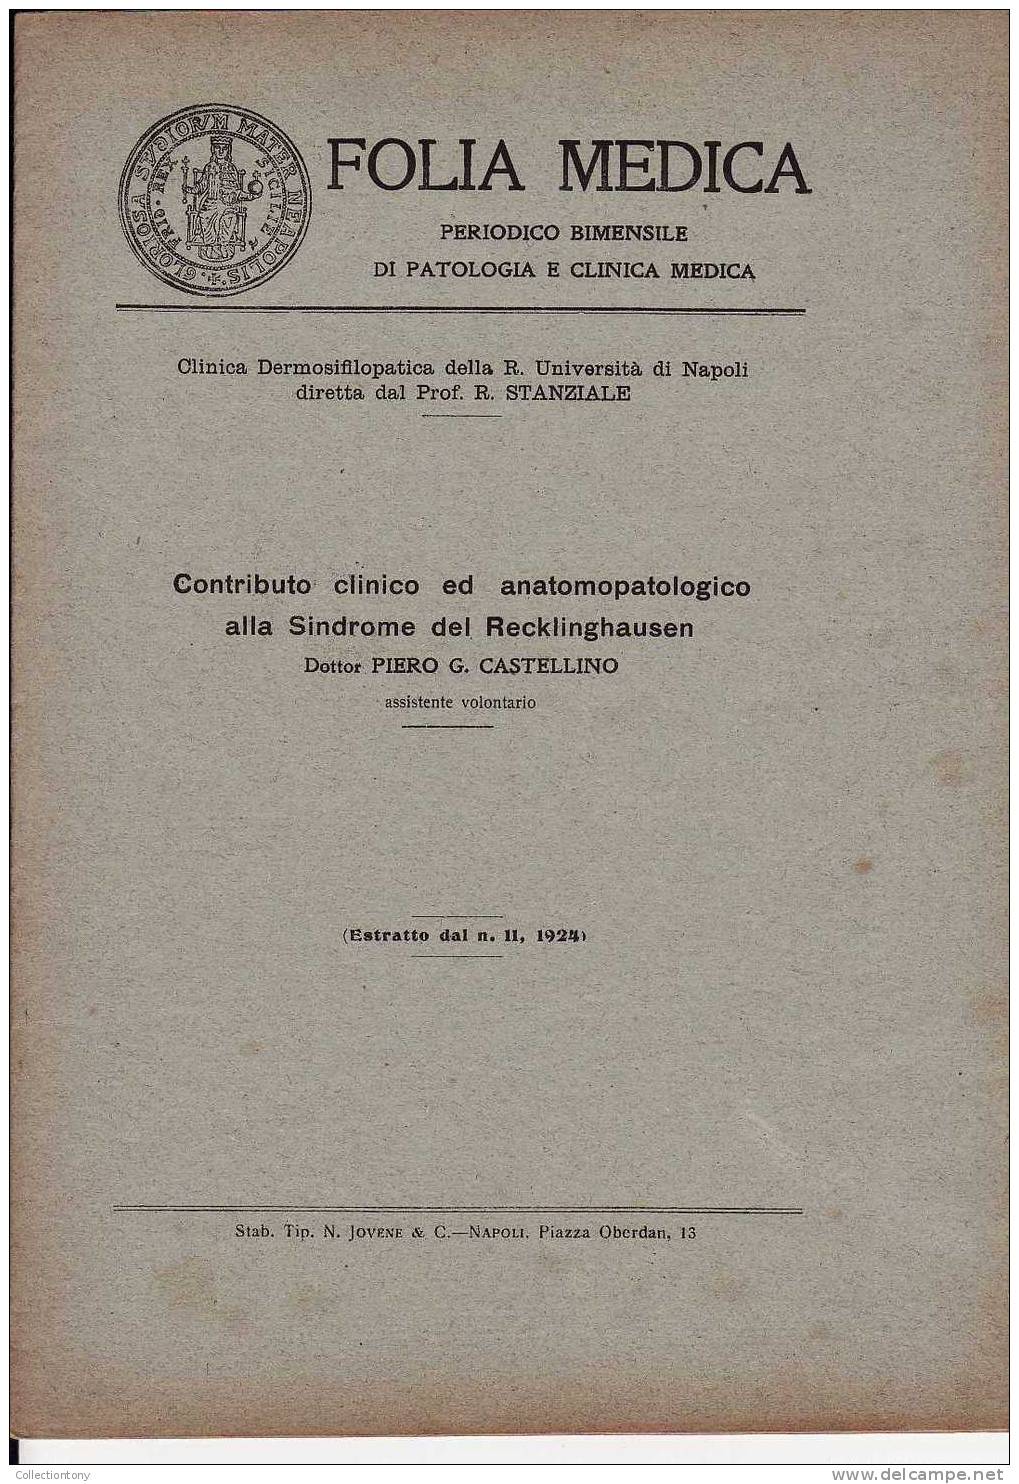 FOLIA MEDICA - SINDROME DEL RECKLINGHAUSEN - PAGINE 12 - (ESTRATTO DAL N° 11- 1924) - Medicina, Biologia, Chimica